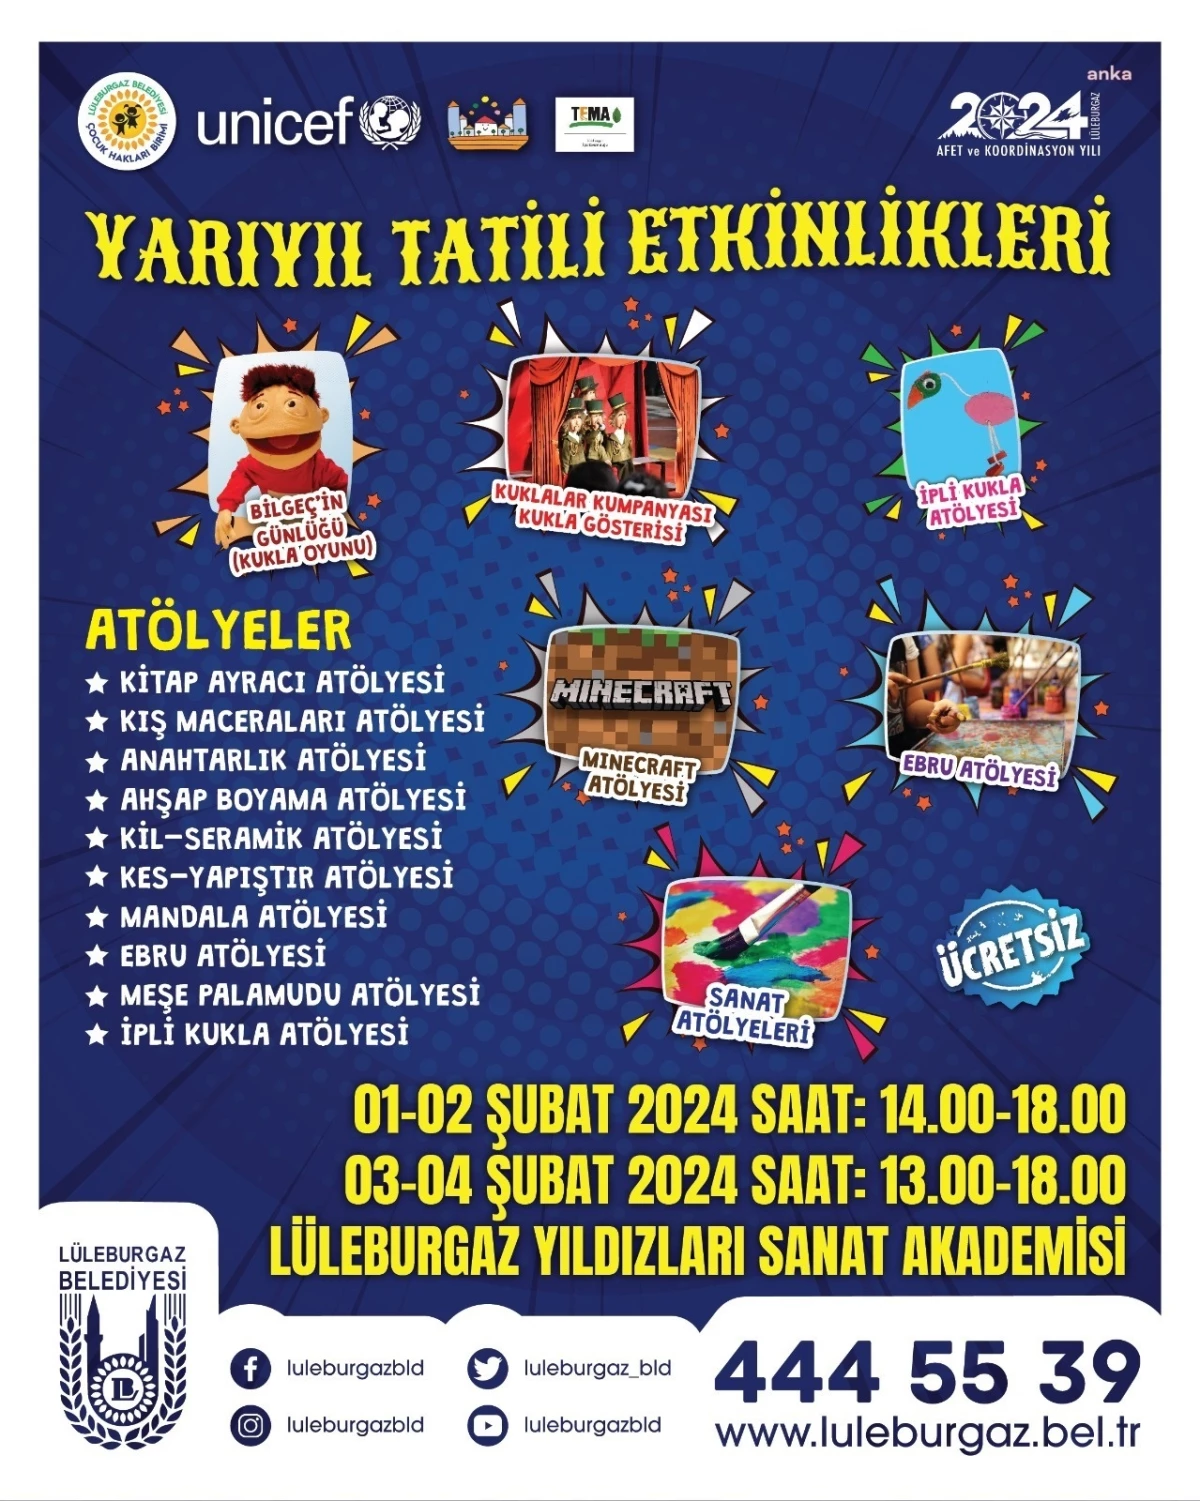 Lüleburgaz Belediyesi Yarıyıl Tatili Etkinlikleri